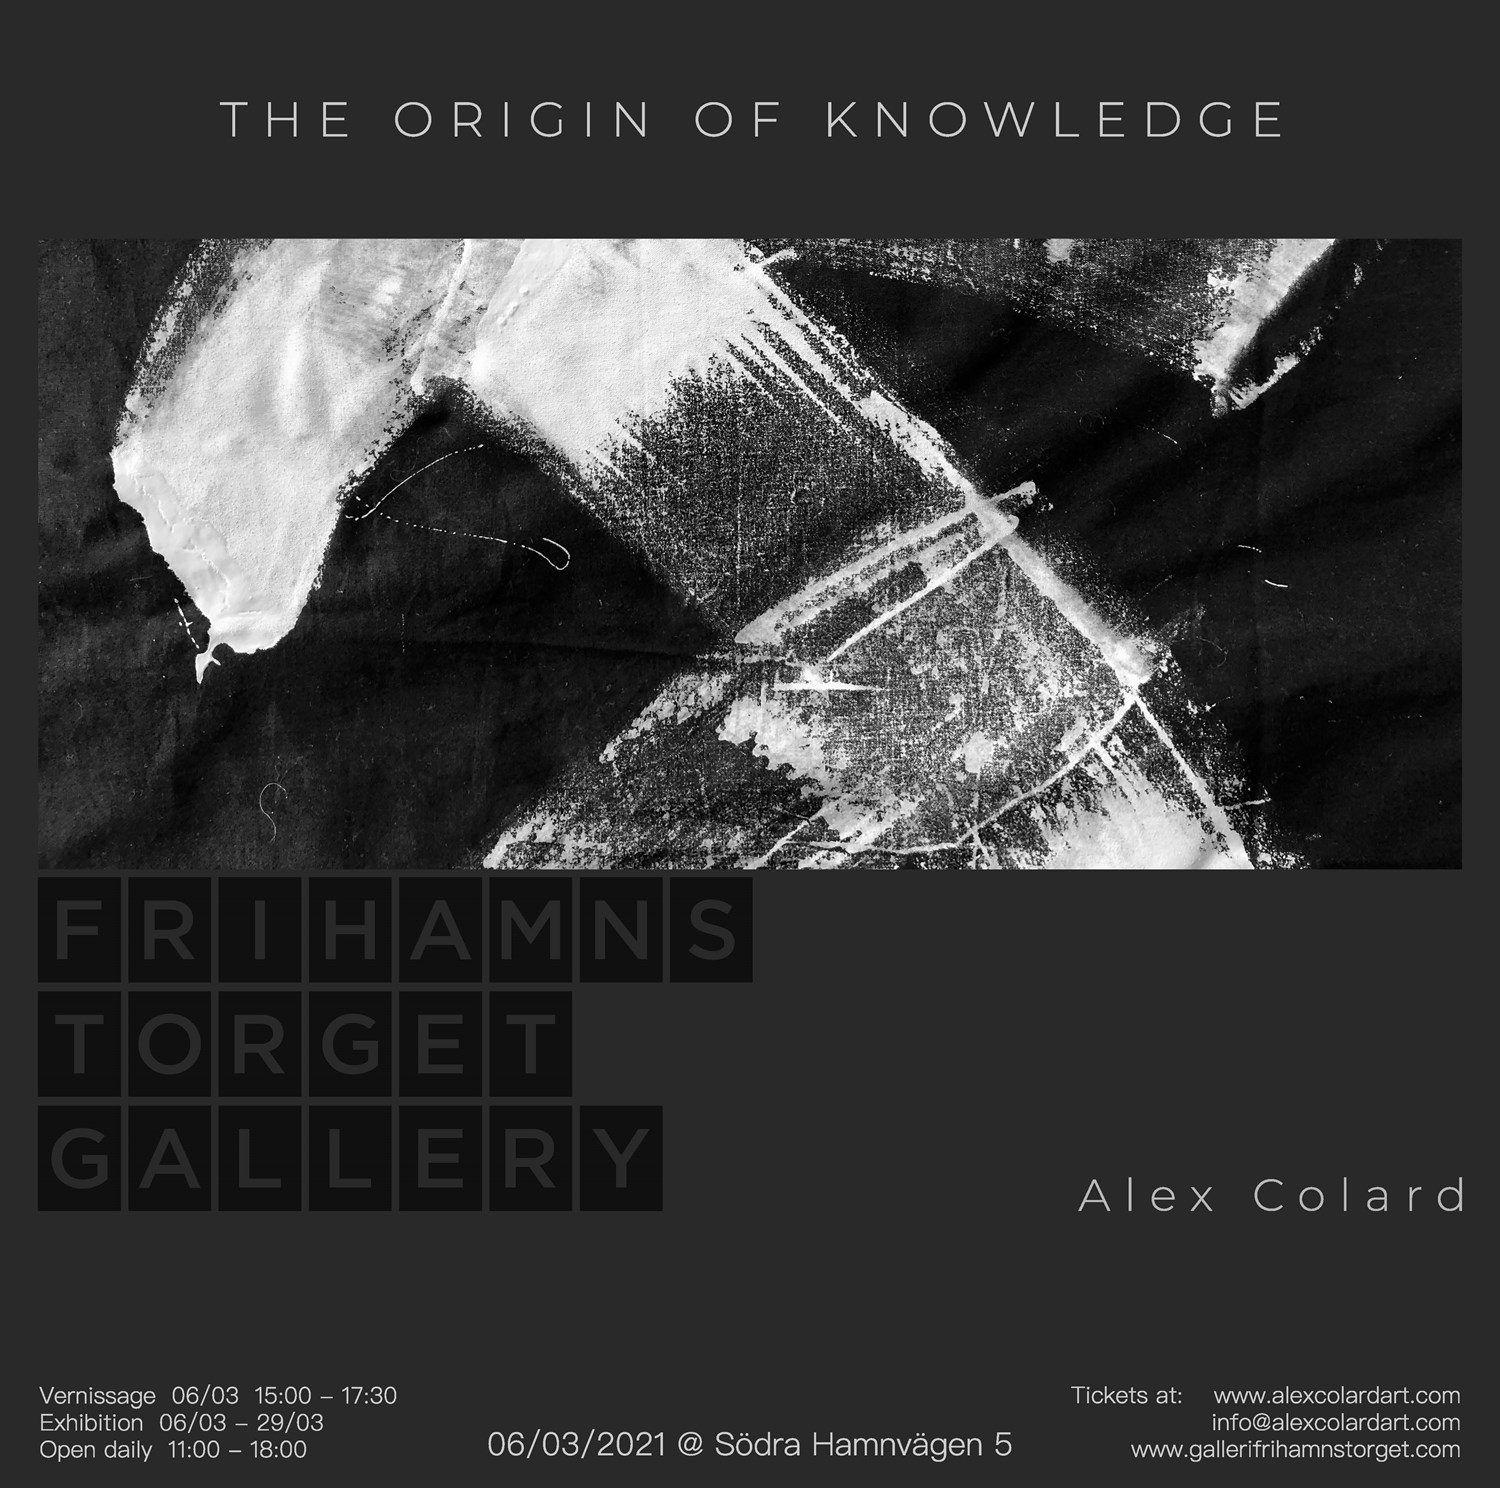 The Origin of Knowledge - Galleri Frihamnstorget Exhibition - March